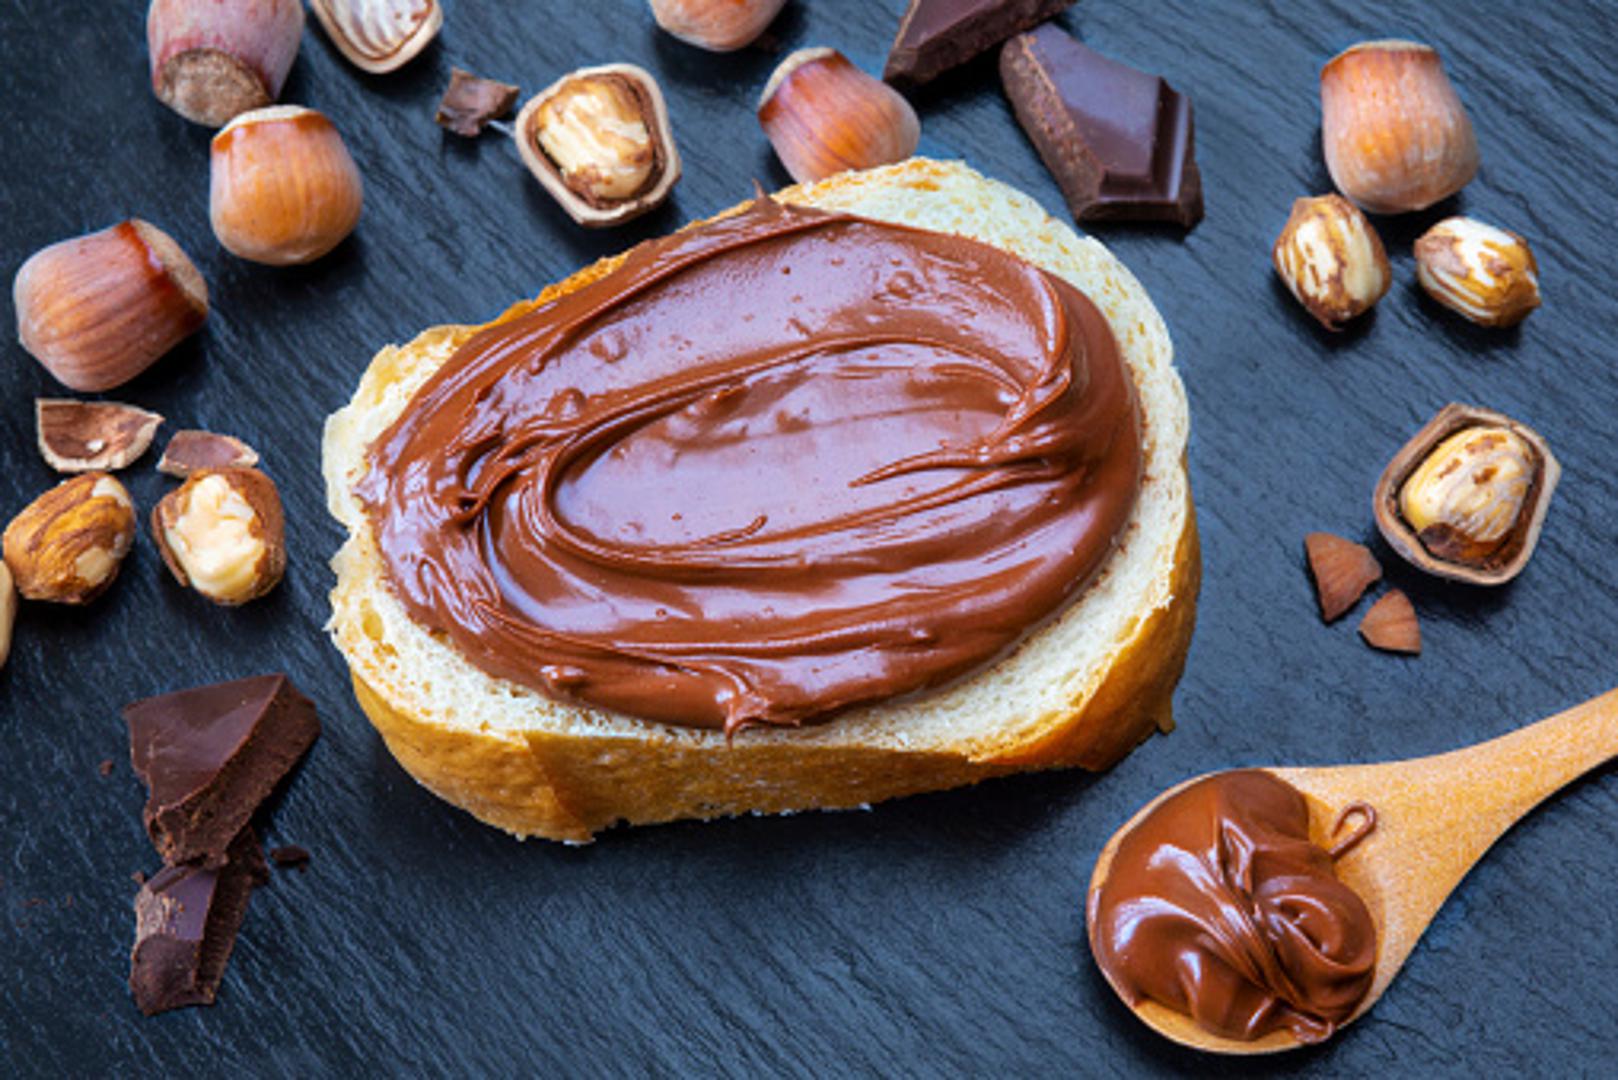 Proizvedena je prvi put za vrijeme Drugog svjetskog rata kada je talijanski slastičar Pietro Ferrero, u nedostatku čokolade, u namaz dodao lješnjake kako bi dobio na količini i uštedio na skupcjenim sirovinama. Tadašanja "Pasta Gianduja" preimenovana je u Nutellu 1946. 